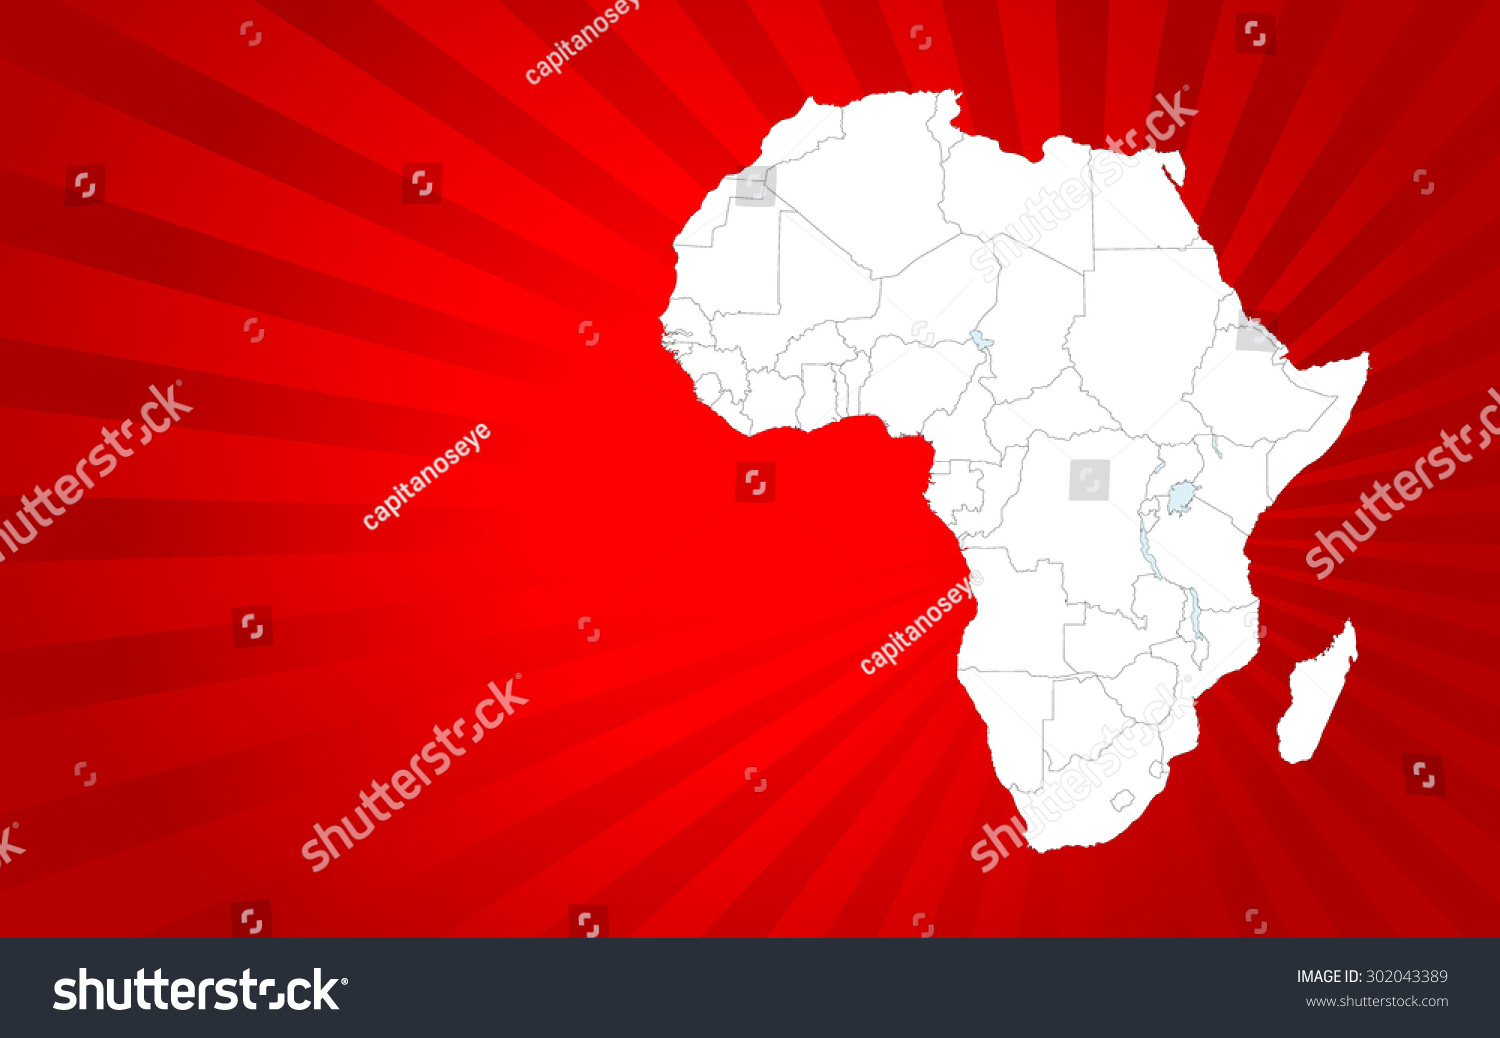 Detailed Map Africa Vector Background Illustration Vector De Stock Libre De Regalías 3348